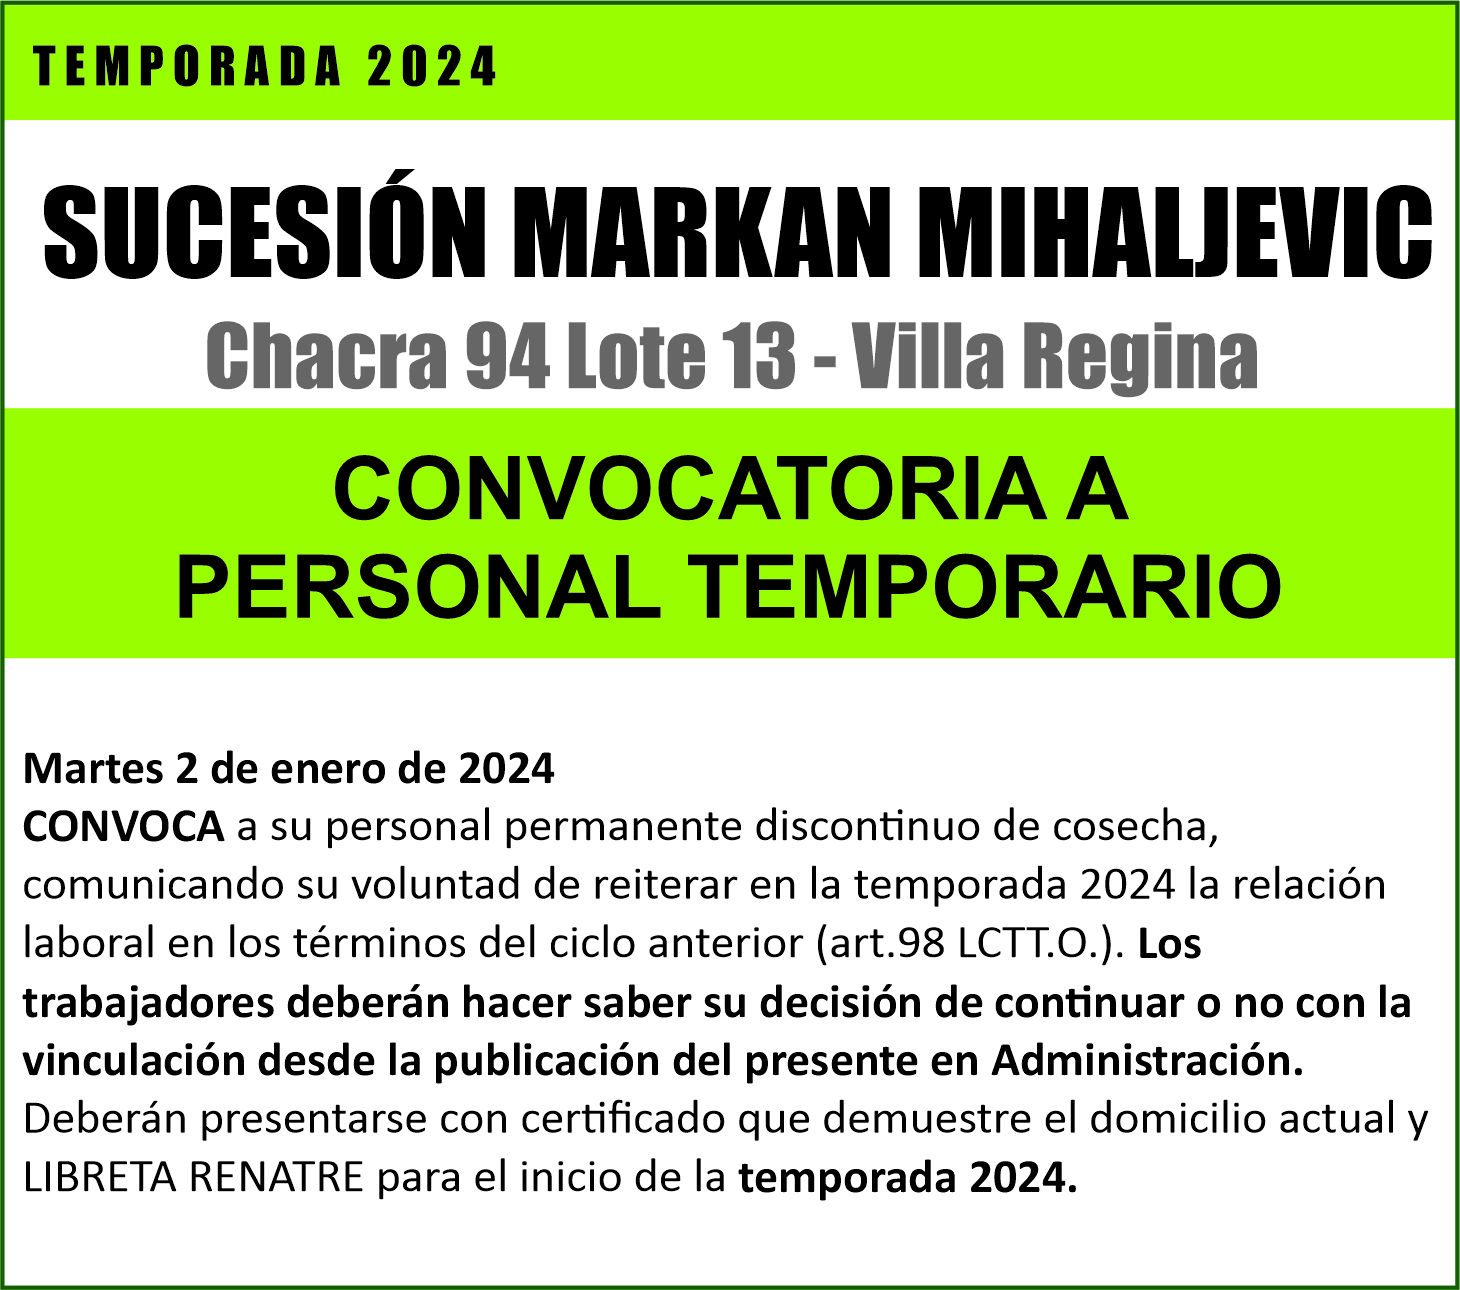 La Sucesión Markan Mihaljevic convoca a su personal de temporada 2024